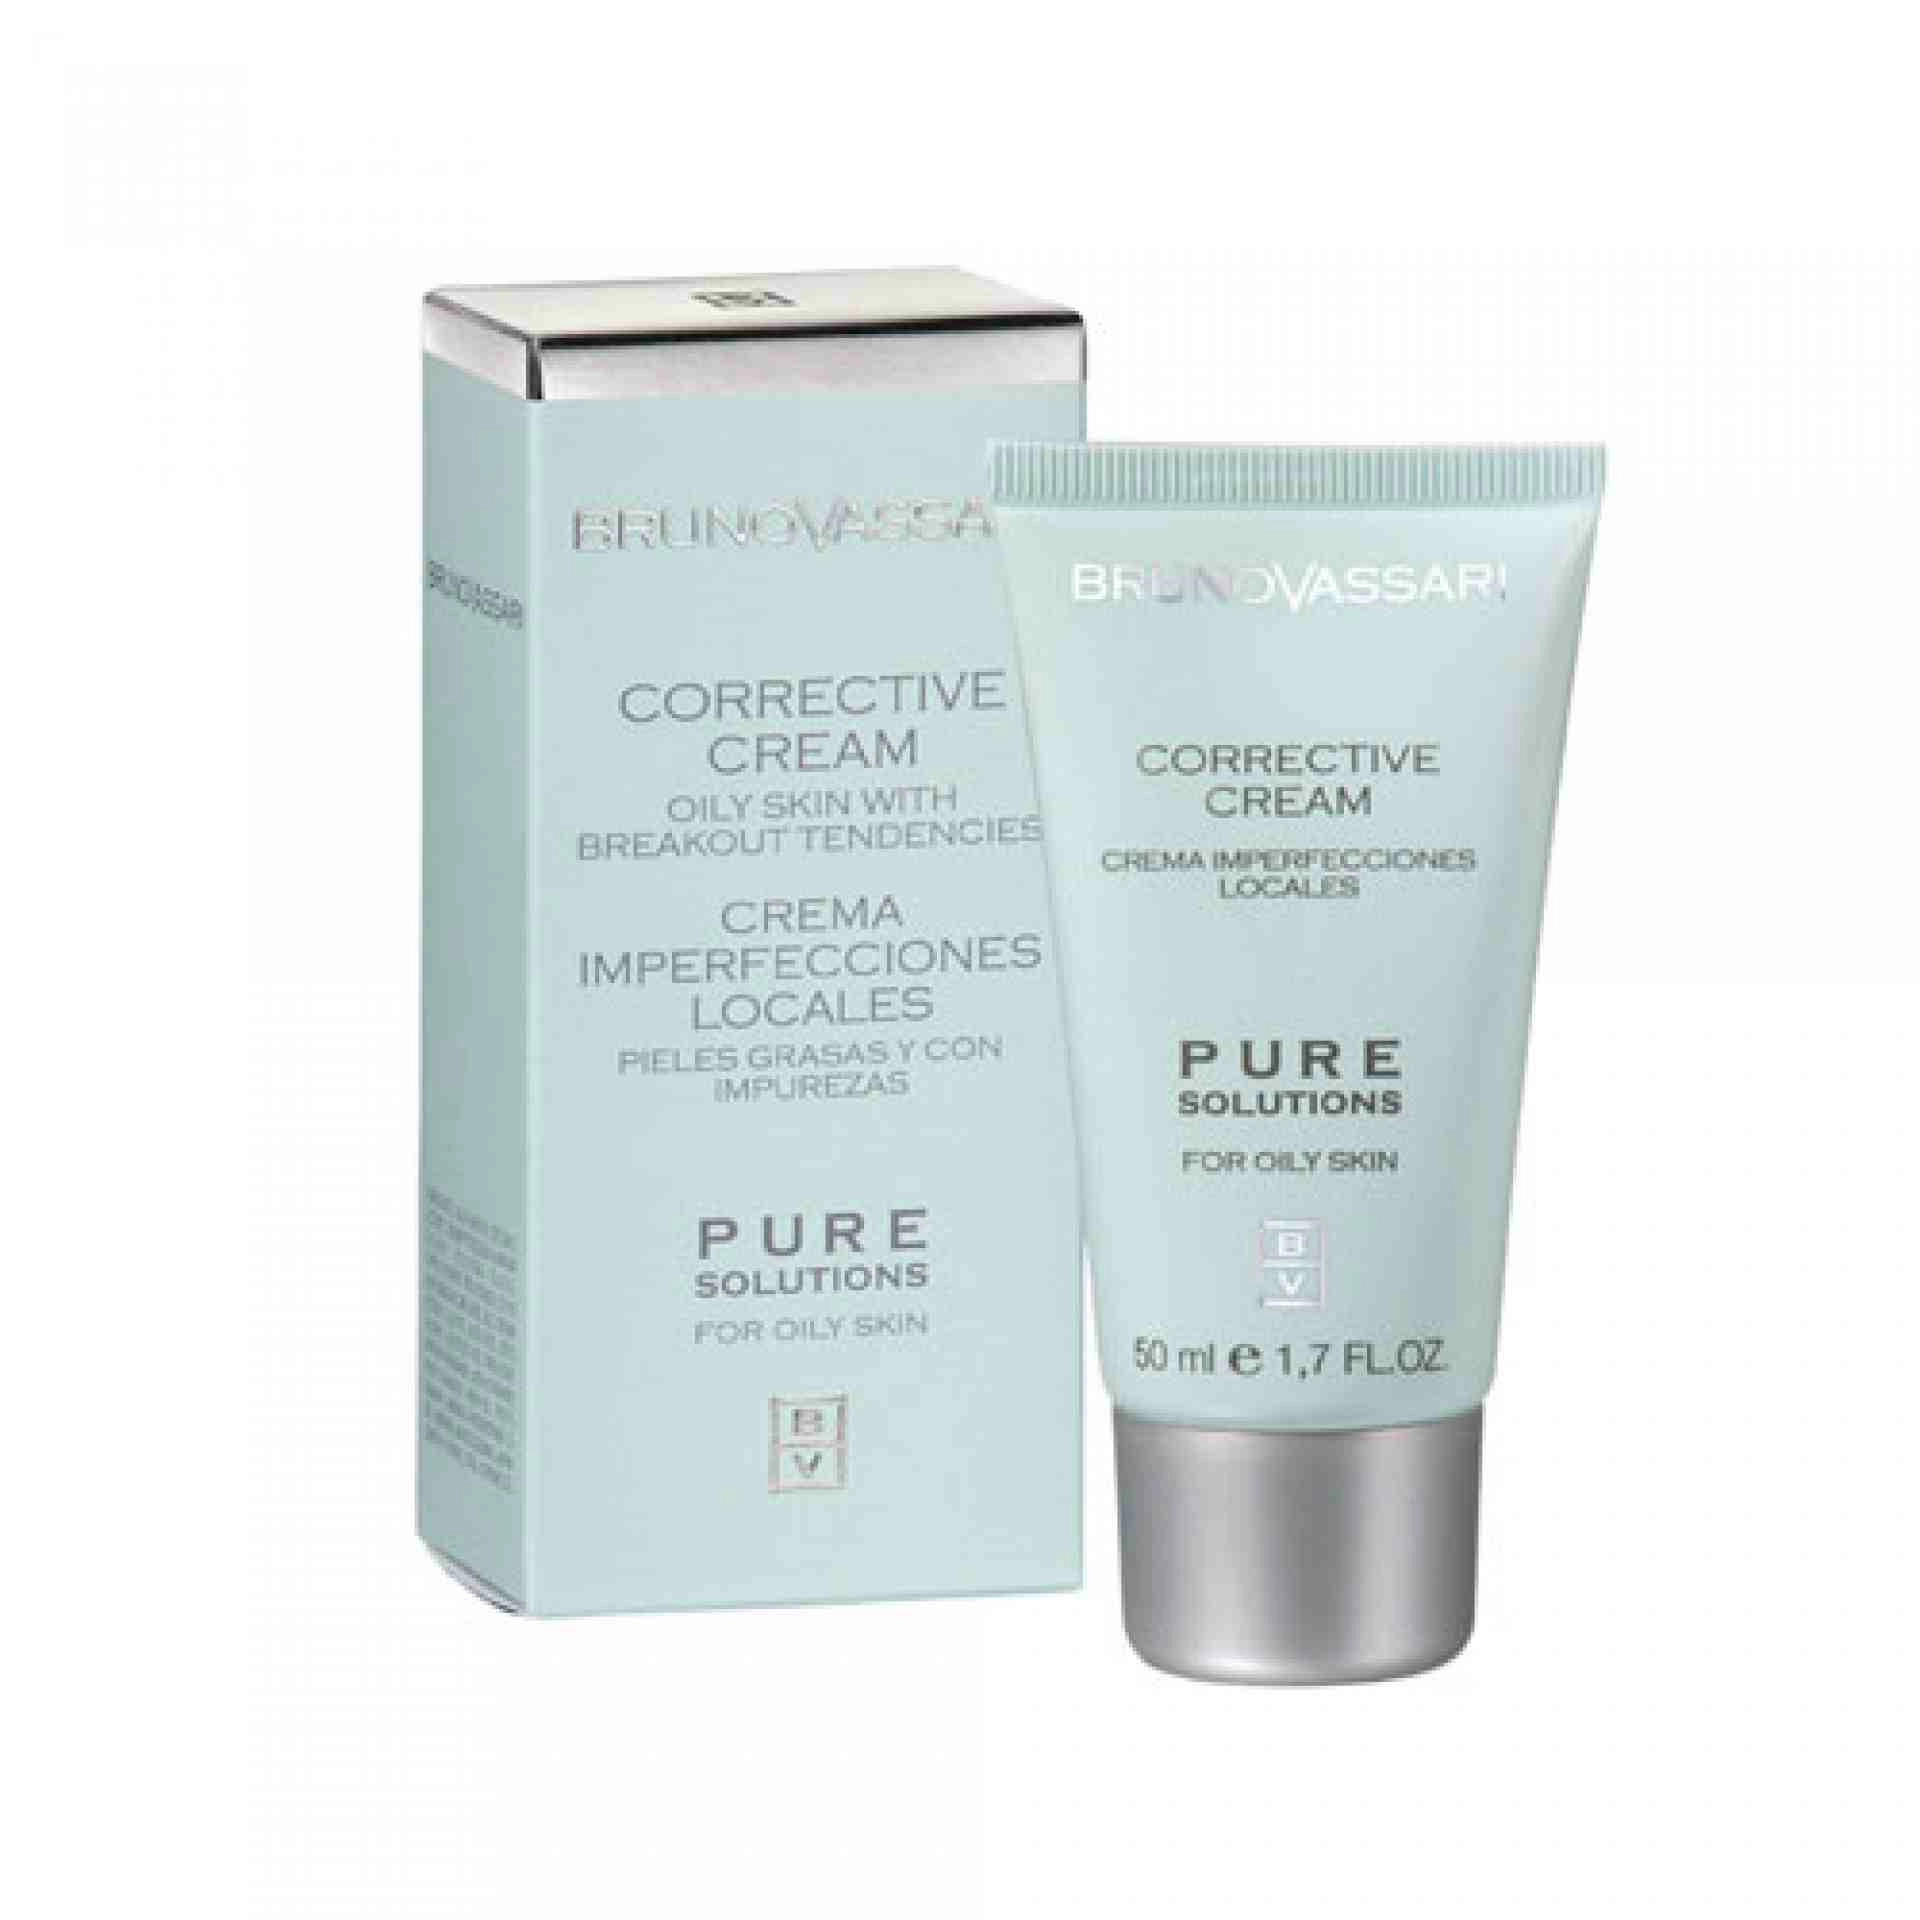 Corrective Cream | Crema antiimperfecciones 50ml - Pure Solutions - Bruno Vassari ®